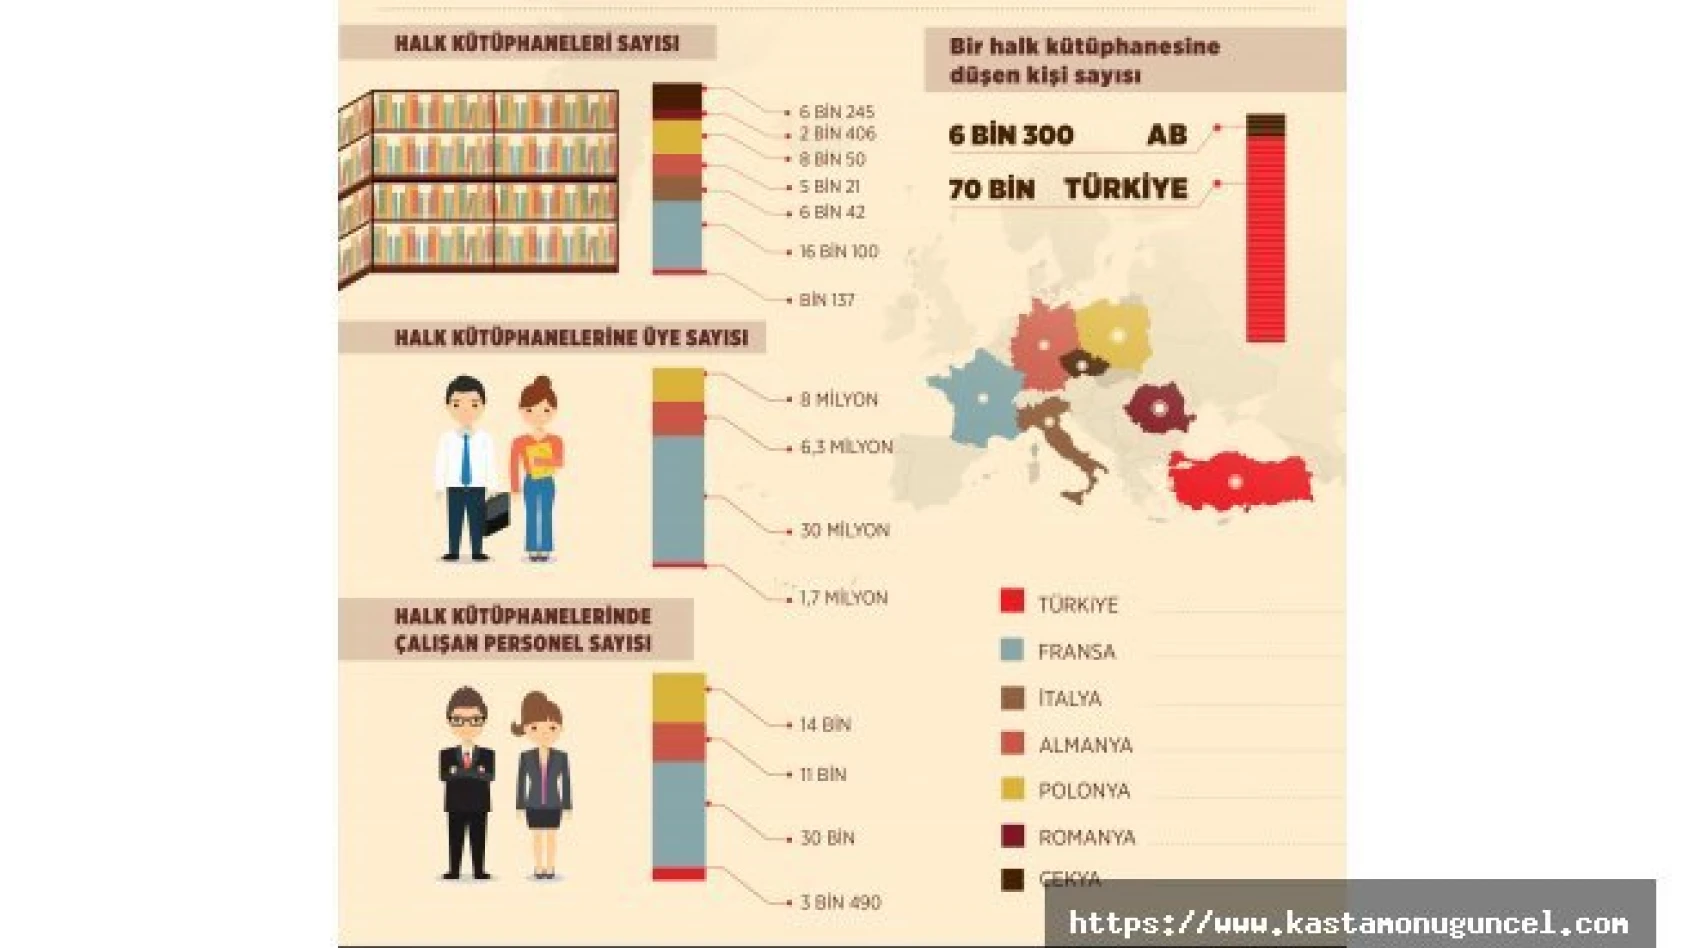 Türkiye'de 70 bin kişiye bir halk kütüphanesi düşüyor